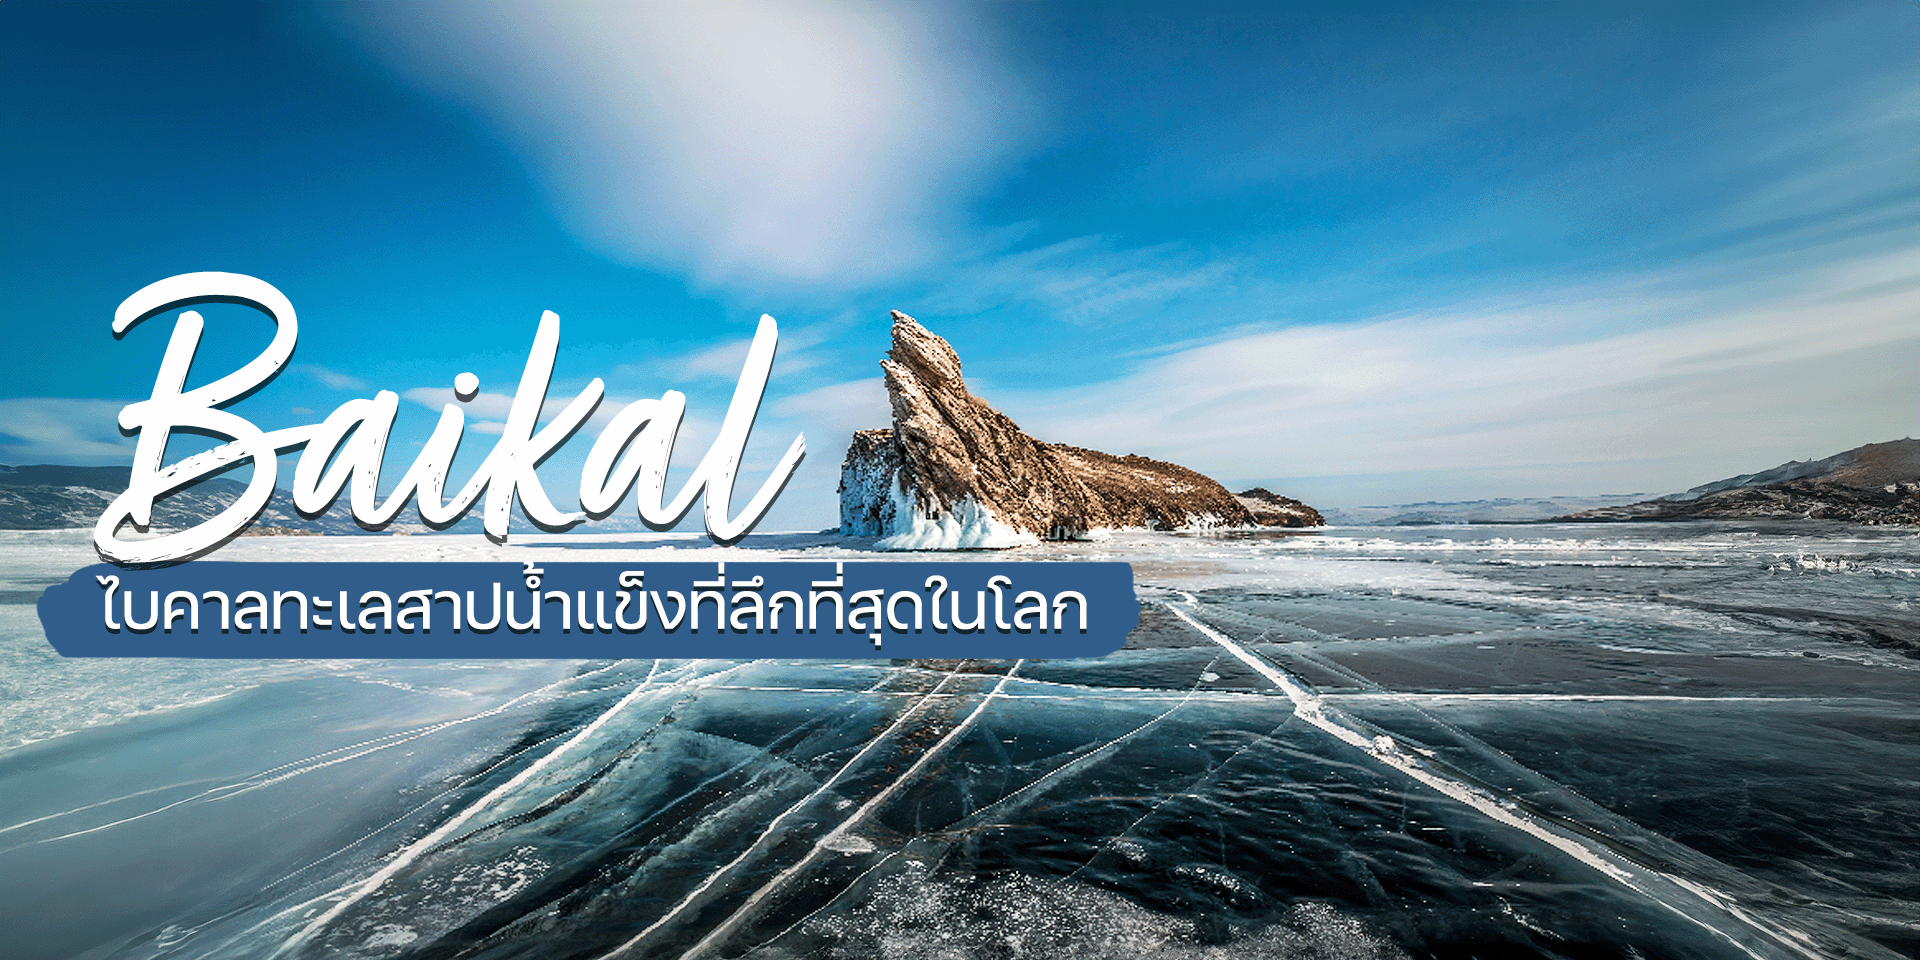 Baikal ทะเลสาปน้ำแข็งที่ลึกที่สุดในโลก